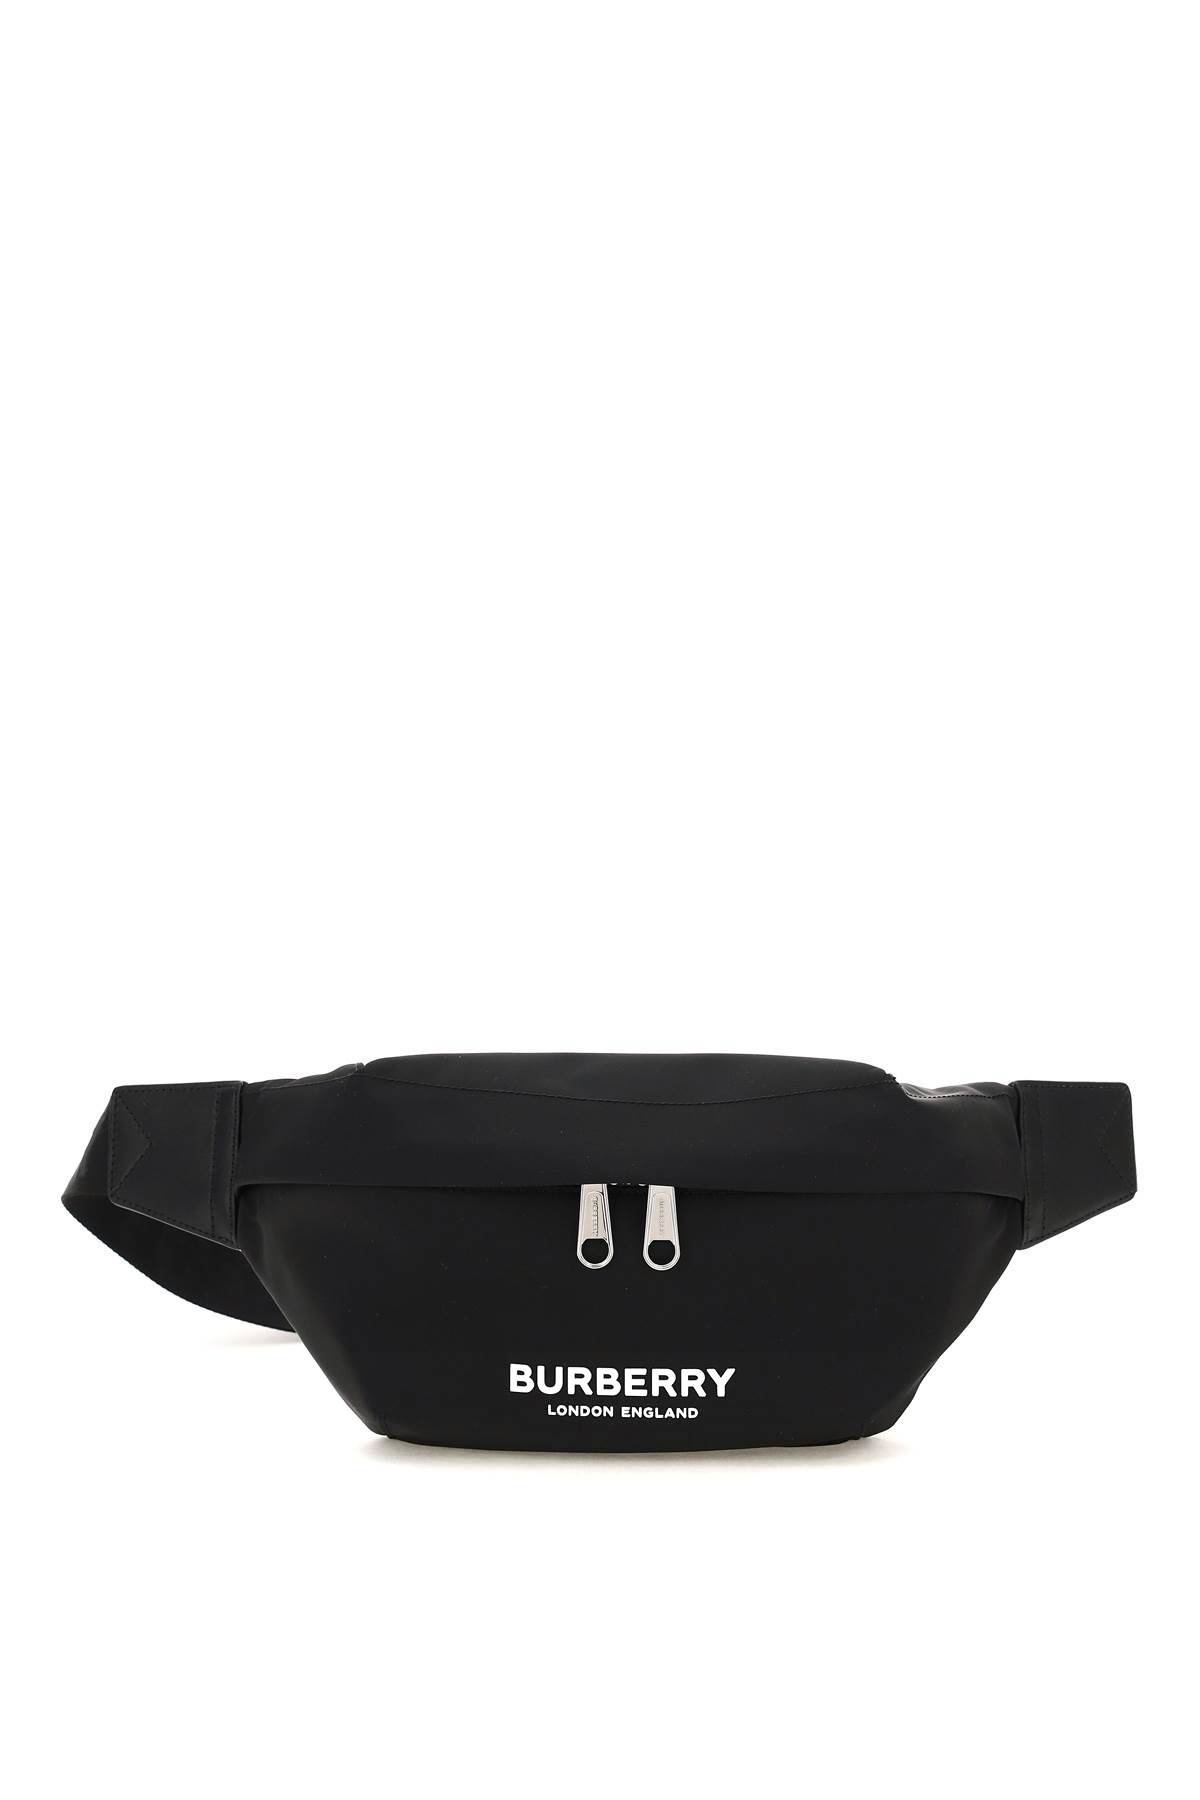 Burberry BURBERRY